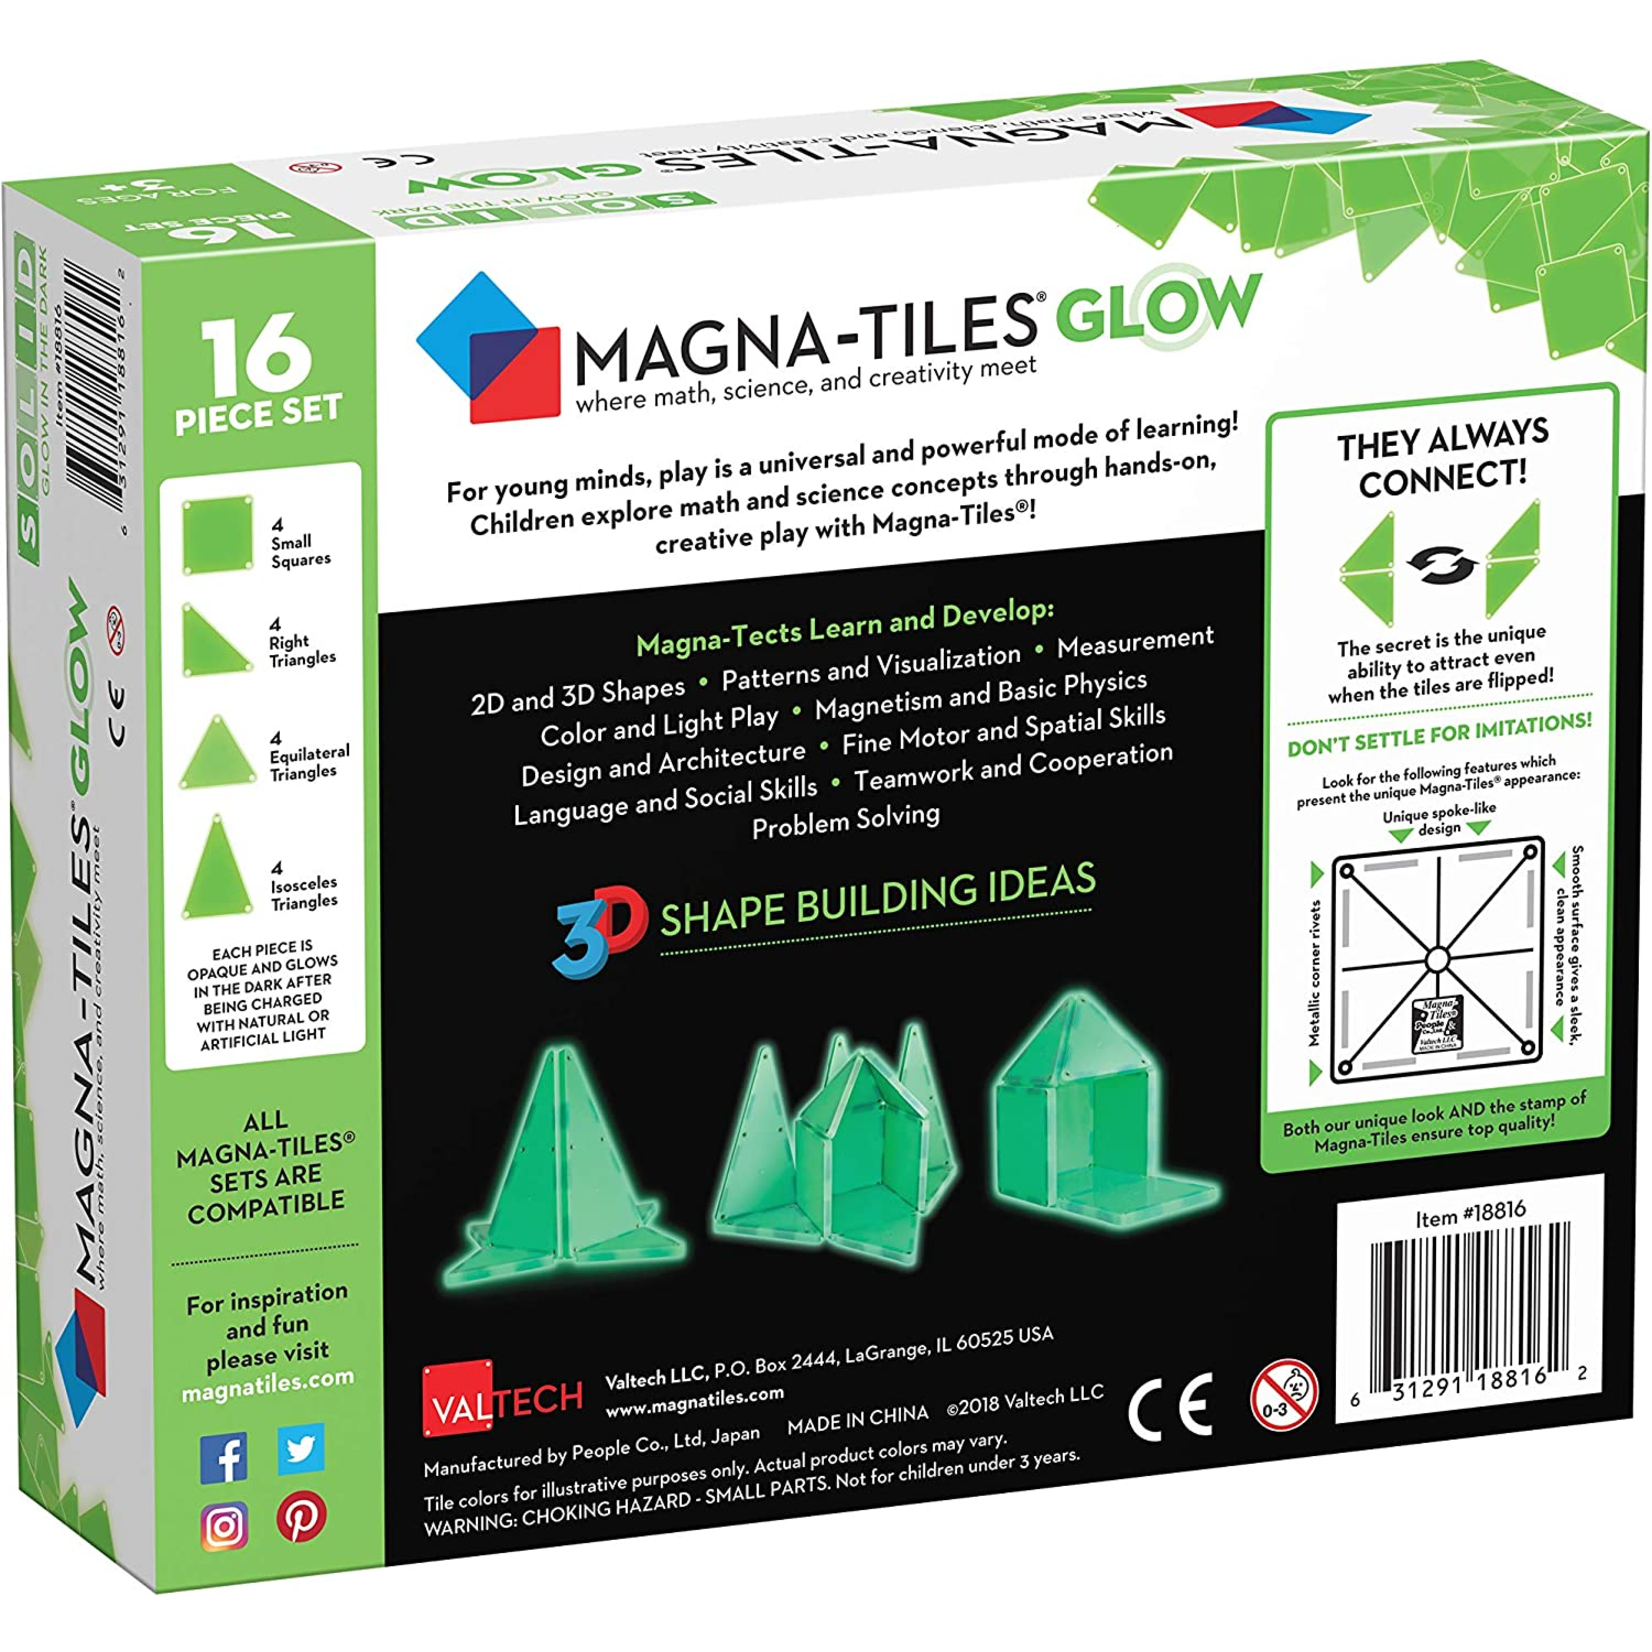 Magna-Tiles Glow 16-Piece Set